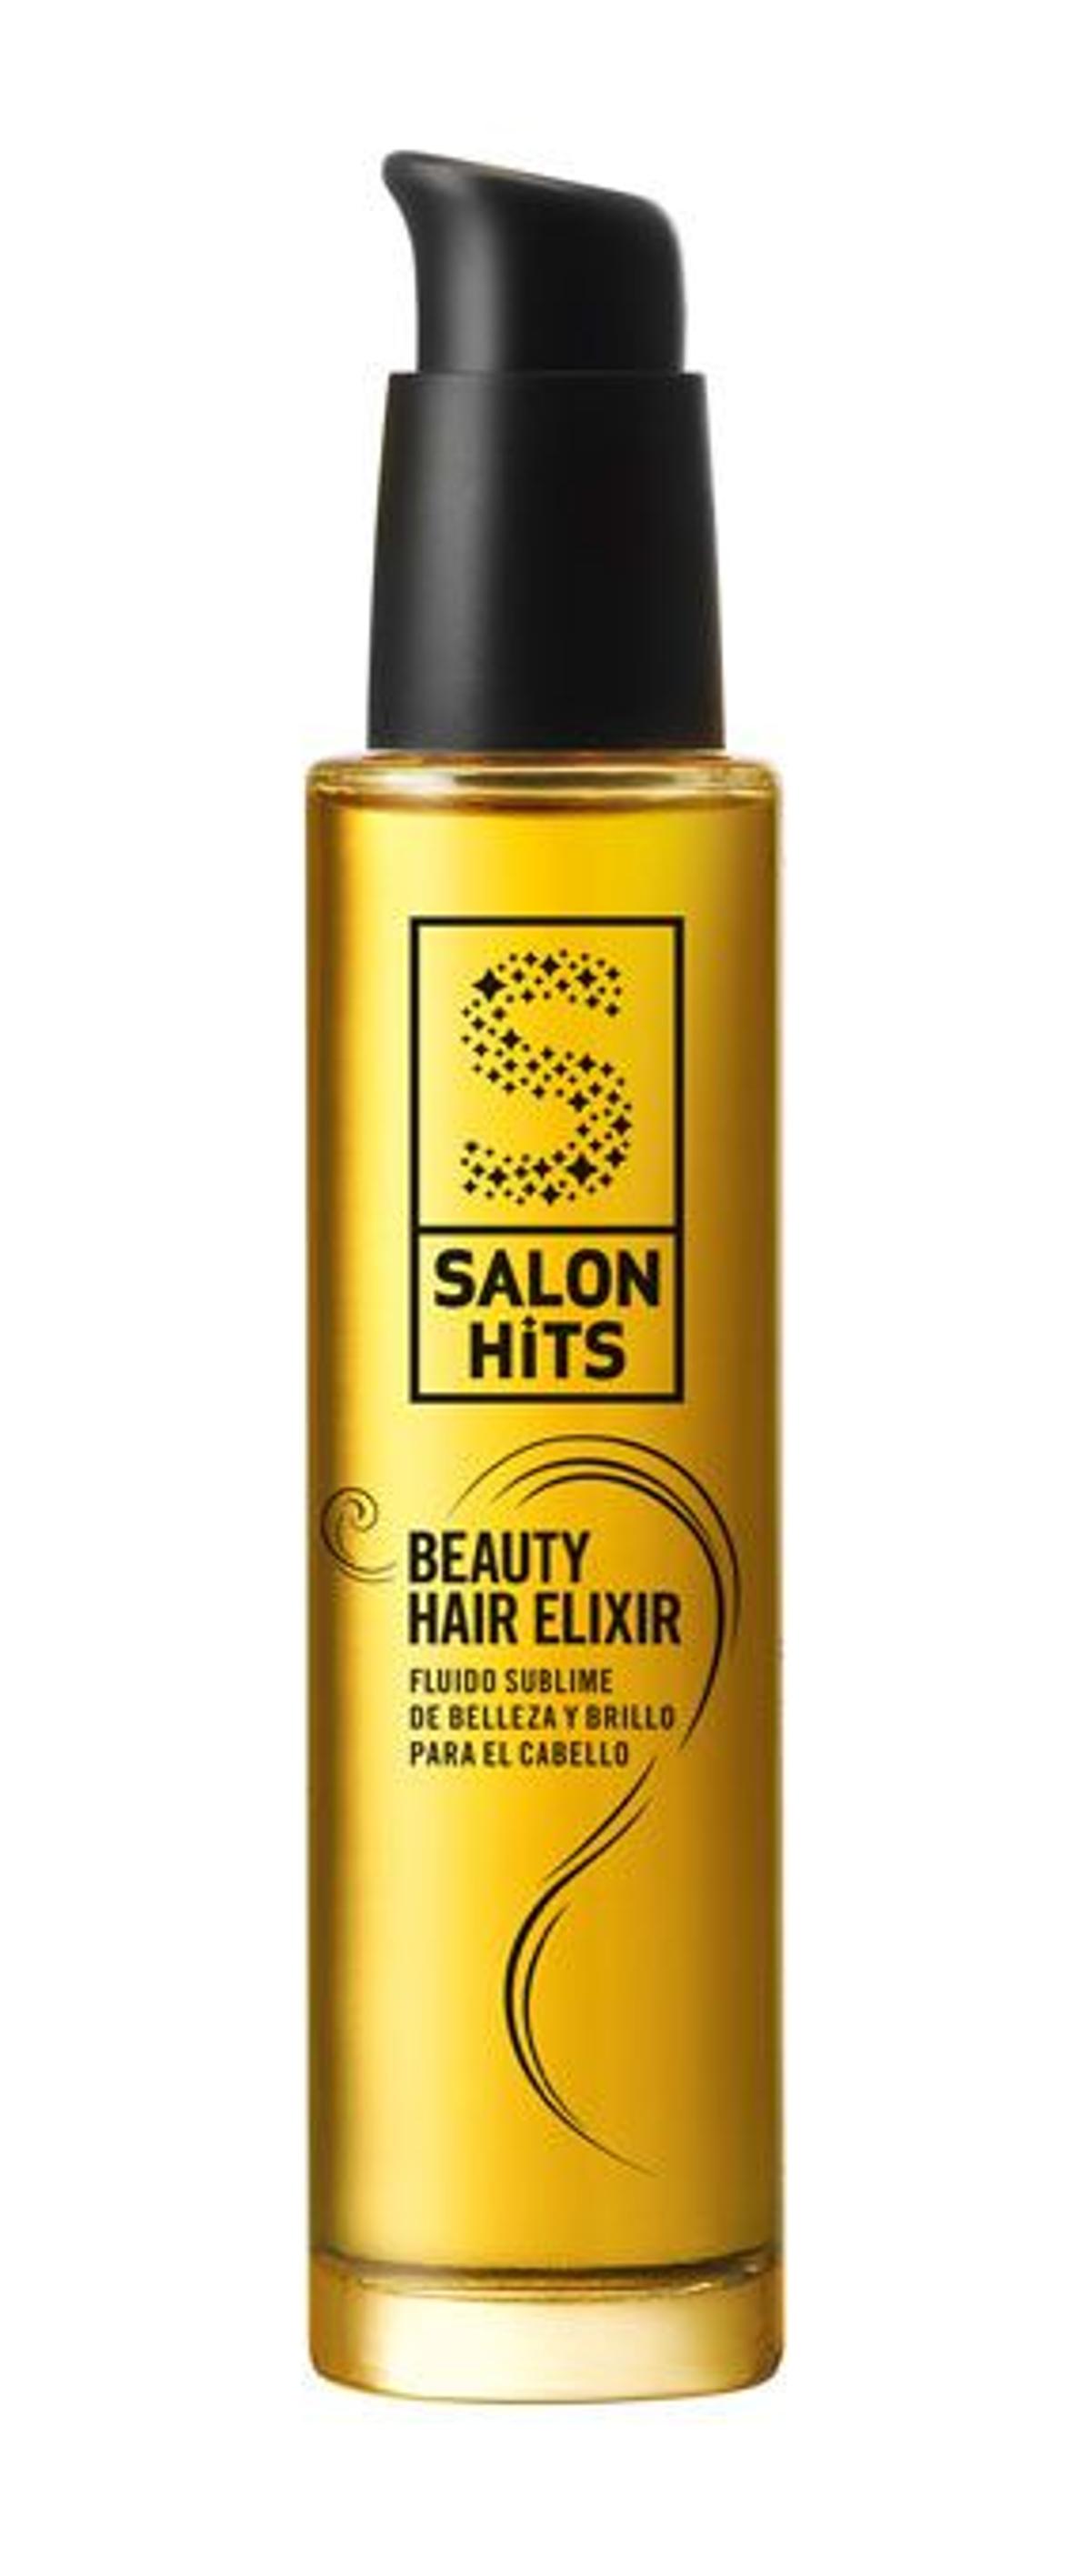 Beauty Hair Elixir